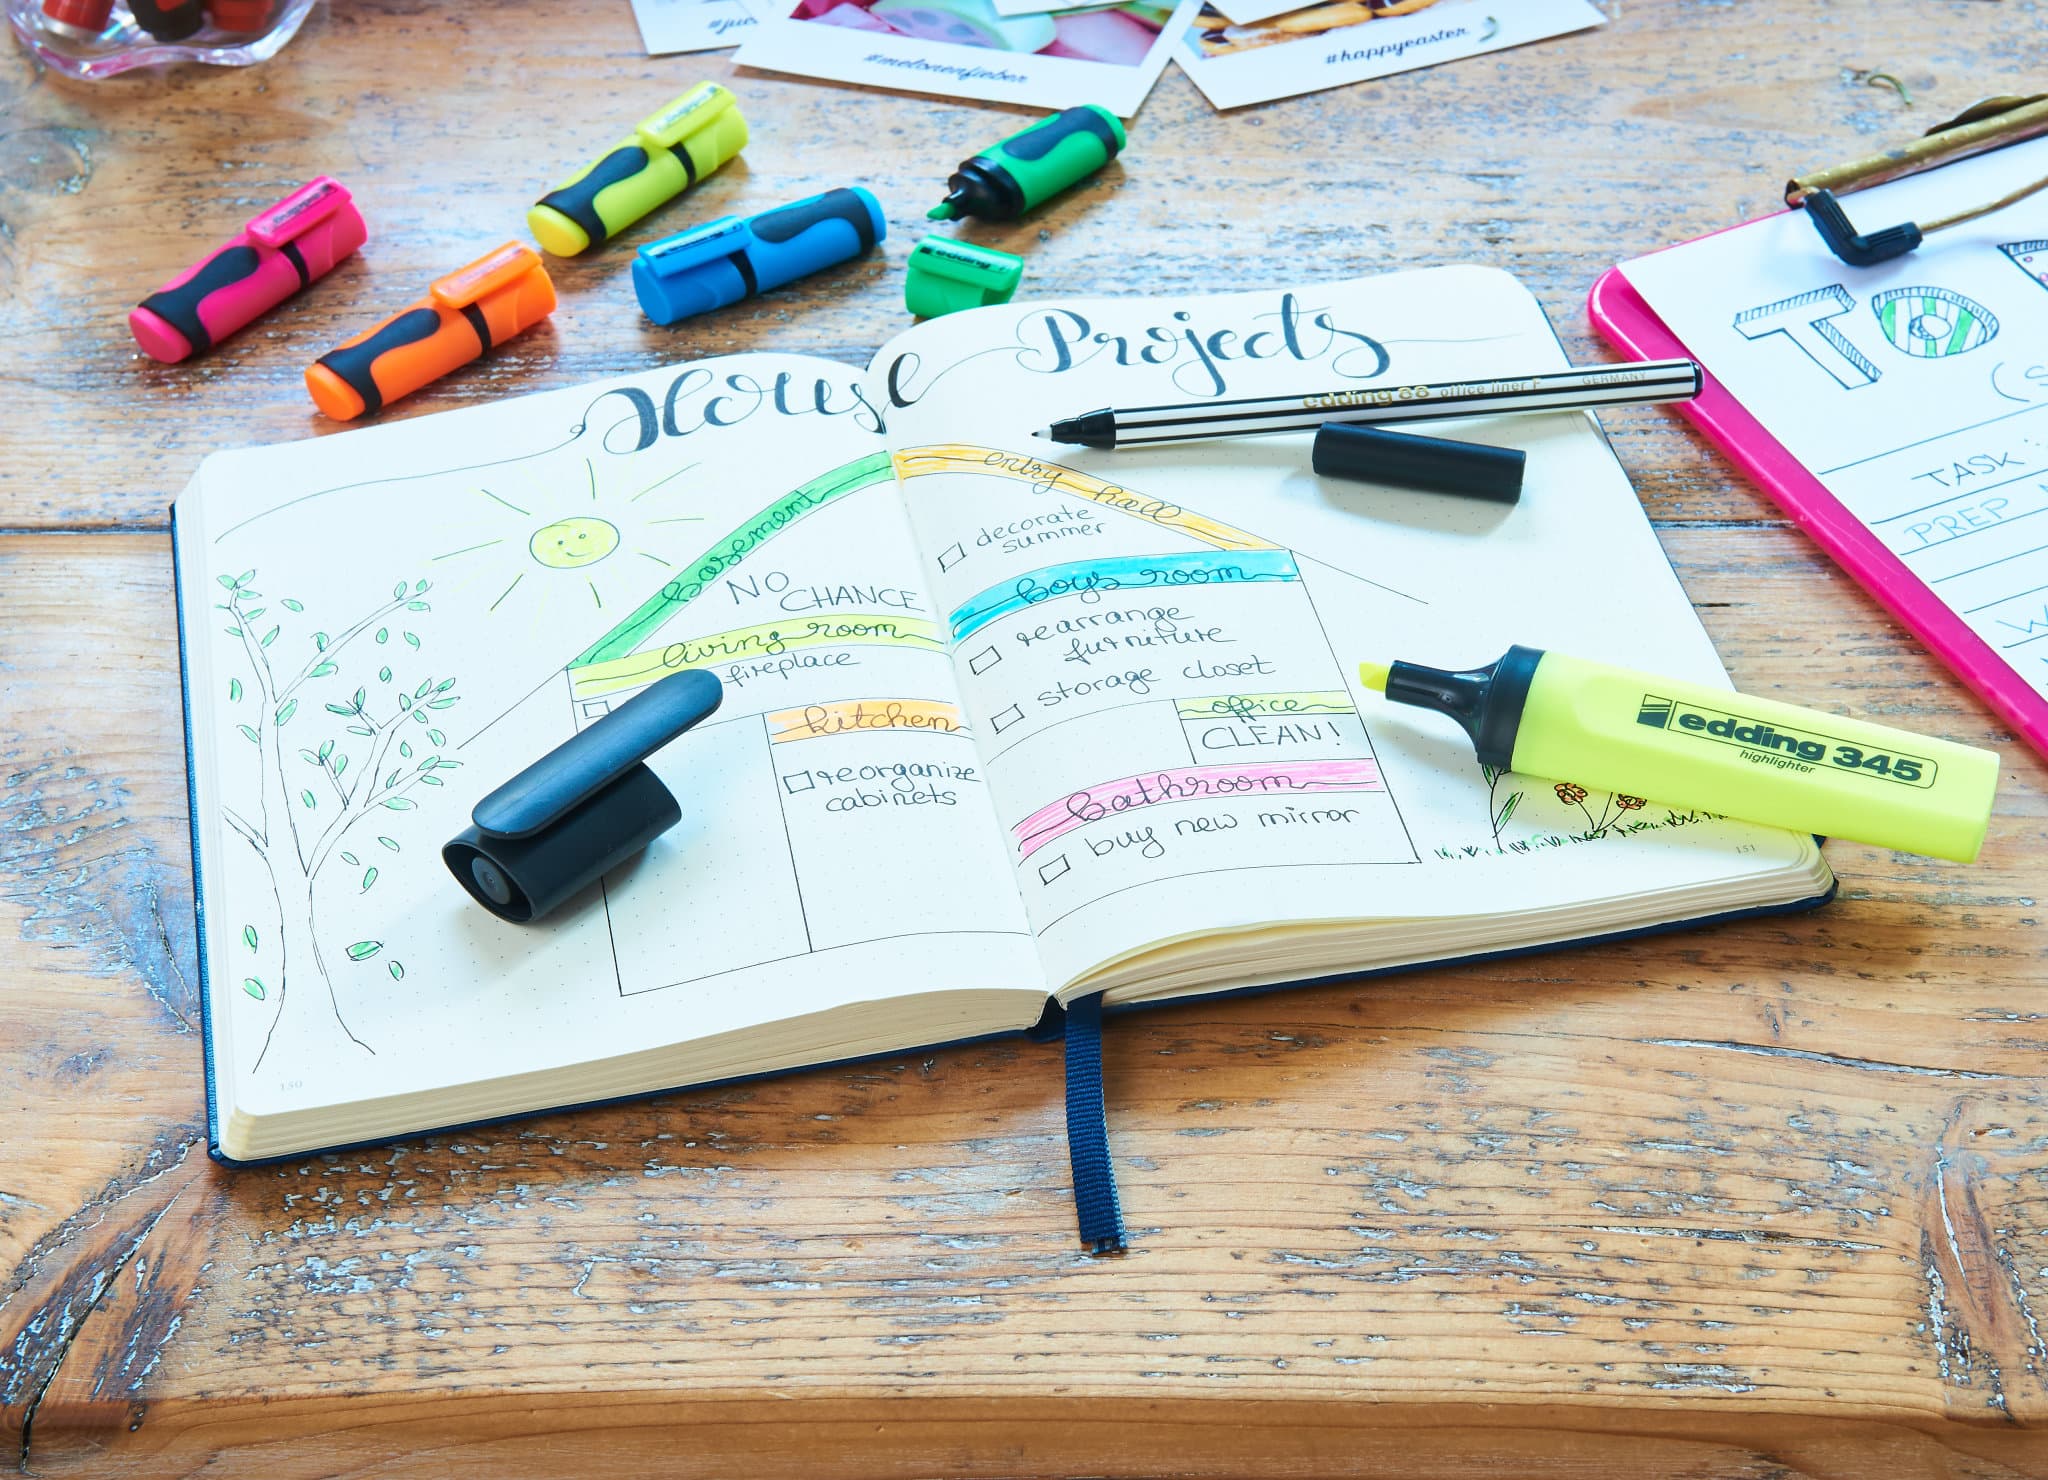 Ein gut organisiertes Projektplanungs-Notizbuch aufgeschlagen auf einem Holzschreibtisch mit bunten Markern und edding 345 Textmarker 4er-Set verstreut, was auf eine laufende kreative Brainstorming-Sitzung hinweist.